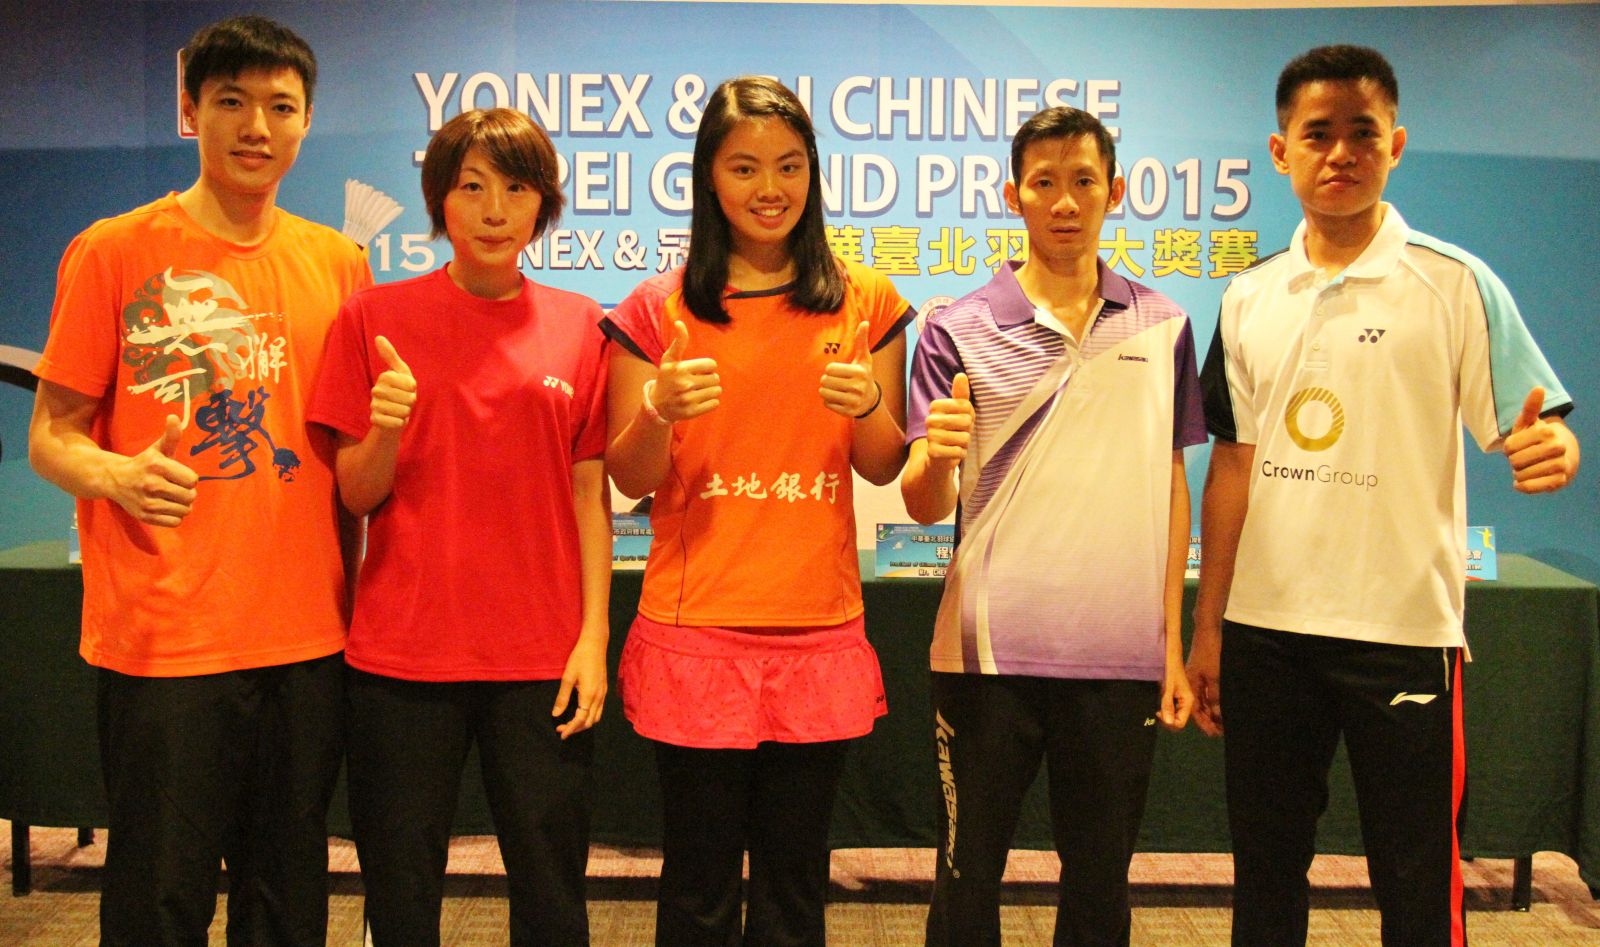 參加賽前記者會的5位球星台灣王子維、日本伊東可奈、台灣李佳馨、越南阮進明、印尼西蒙（由左至右）合影喊讚（大會提供）